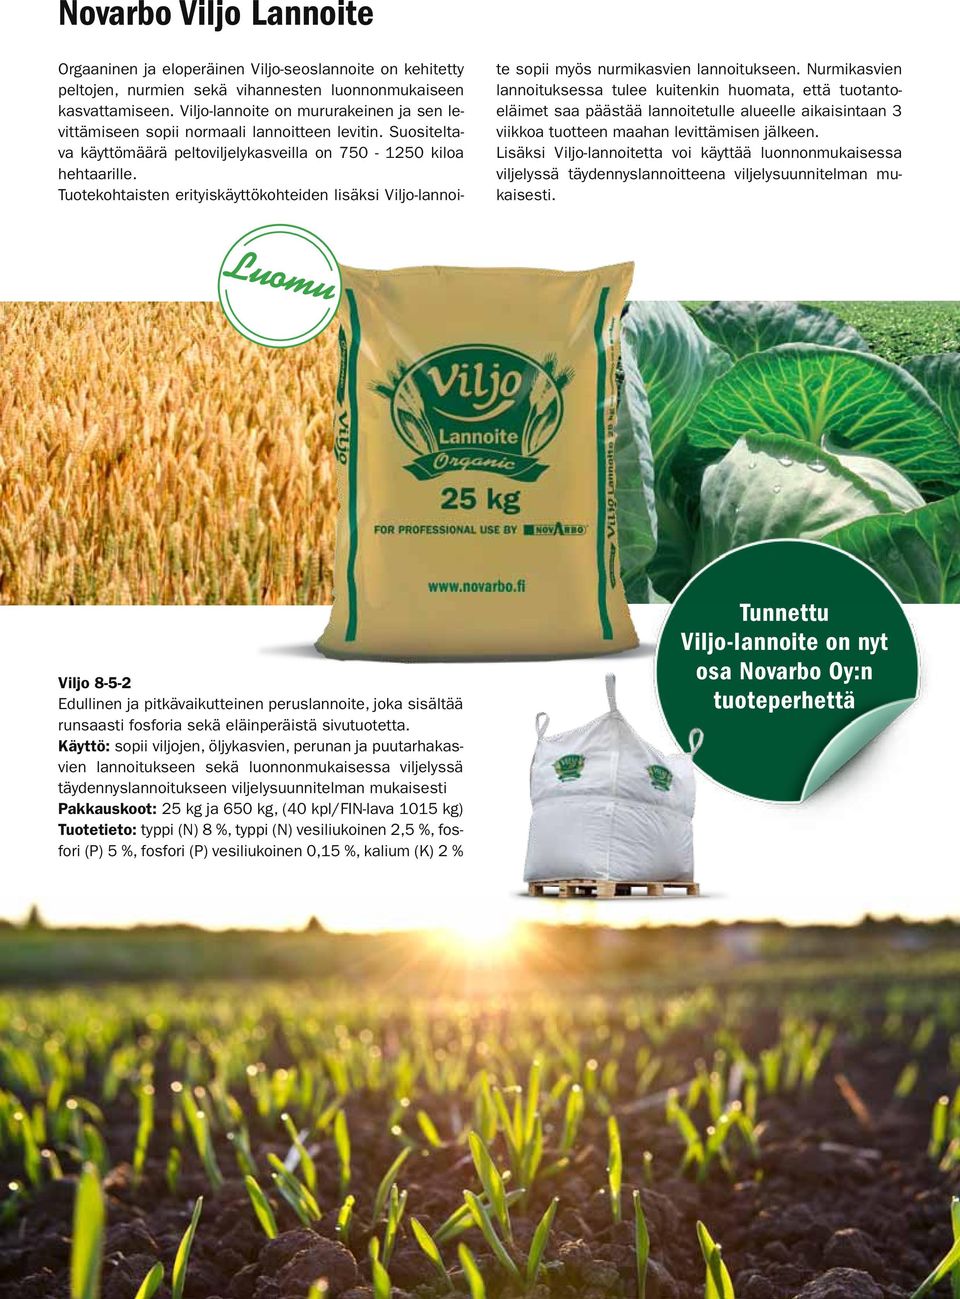 Tuotekohtaisten erityiskäyttökohteiden lisäksi Viljo-lannoite sopii myös nurmikasvien lannoitukseen.